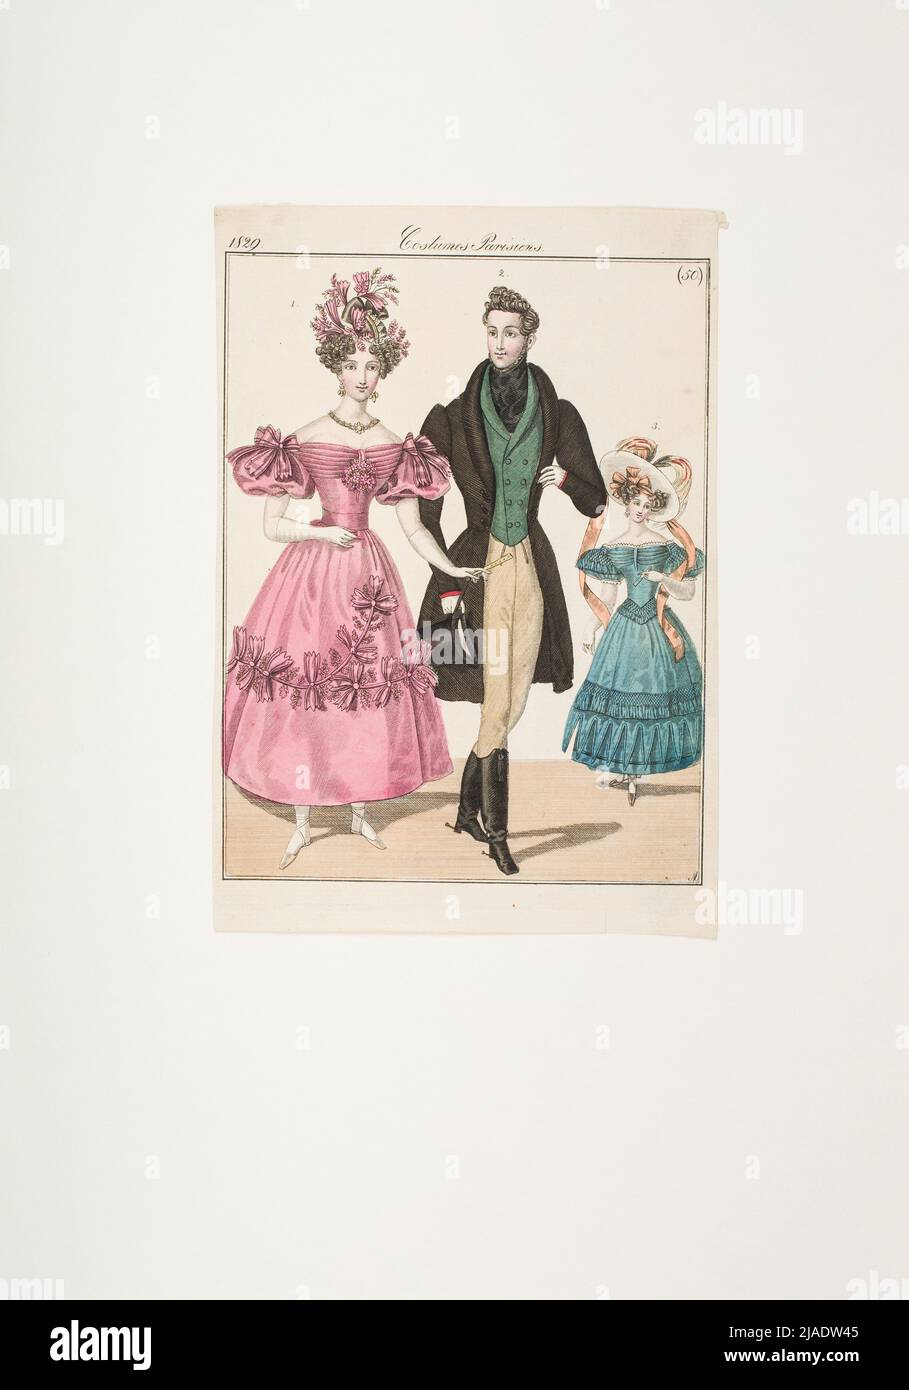 Imagen de moda: 'Parisino con guirnalda de flores en el cabello, parisino en bata de satén, parisino en el traje de montar'. Desconocido Foto de stock